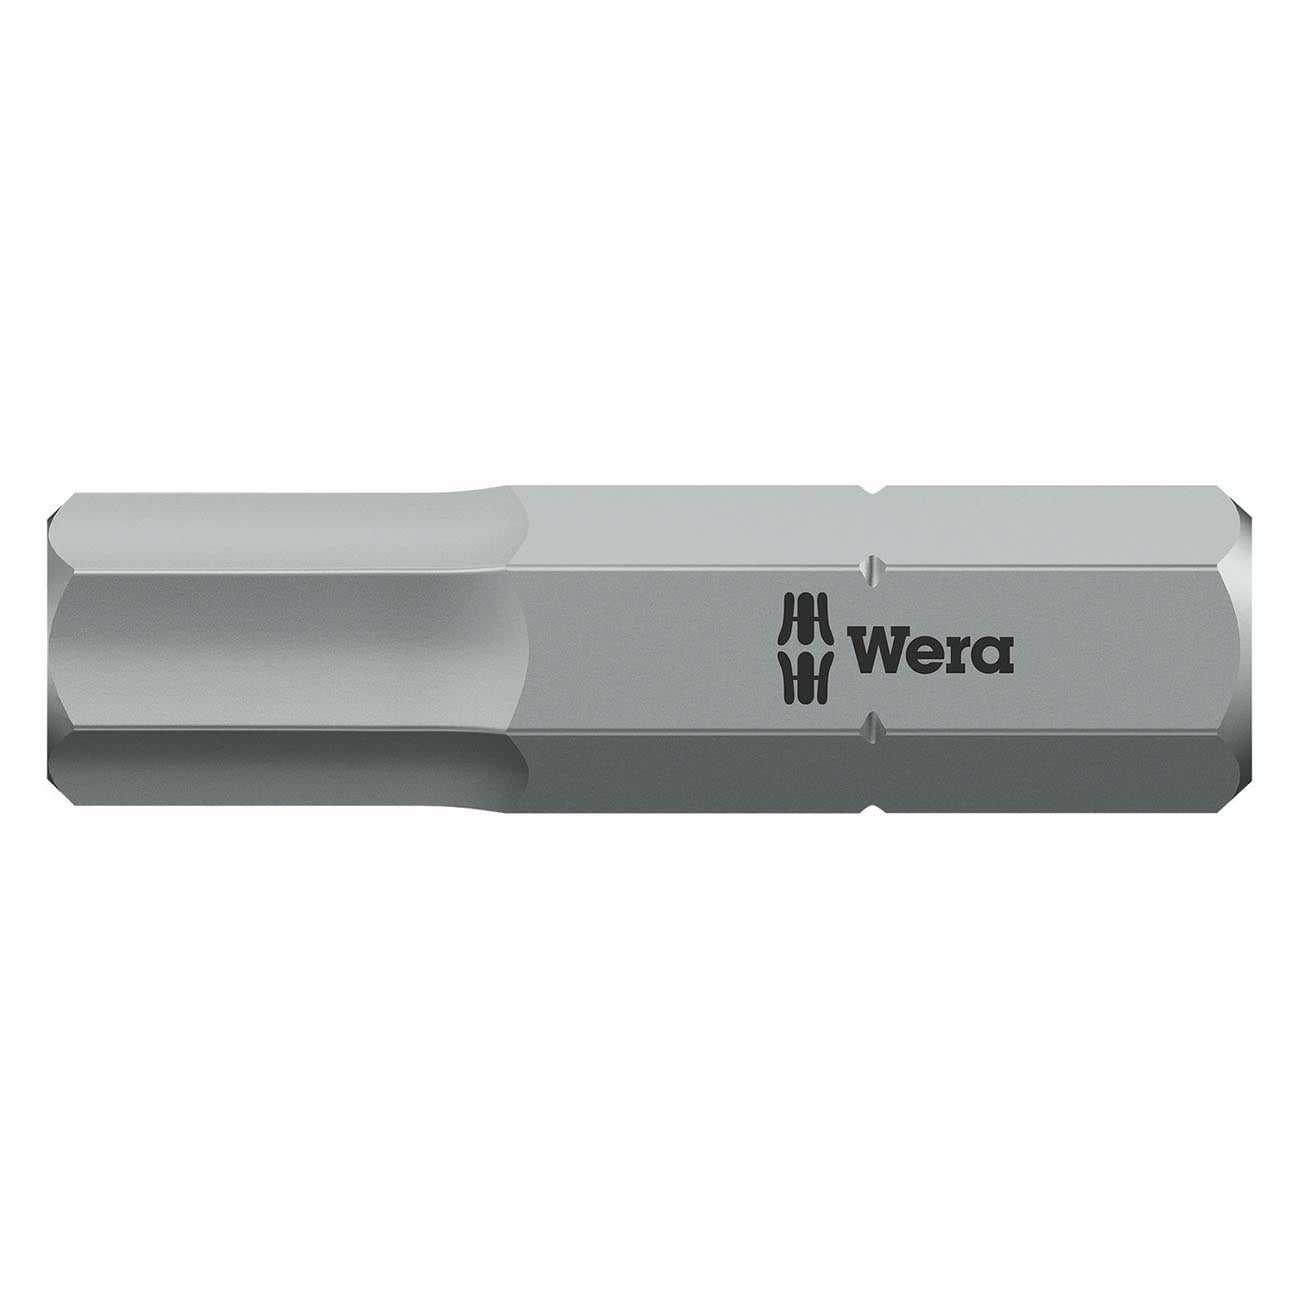 Wera 7mm Hex-plus Bit - 1/4" Drive